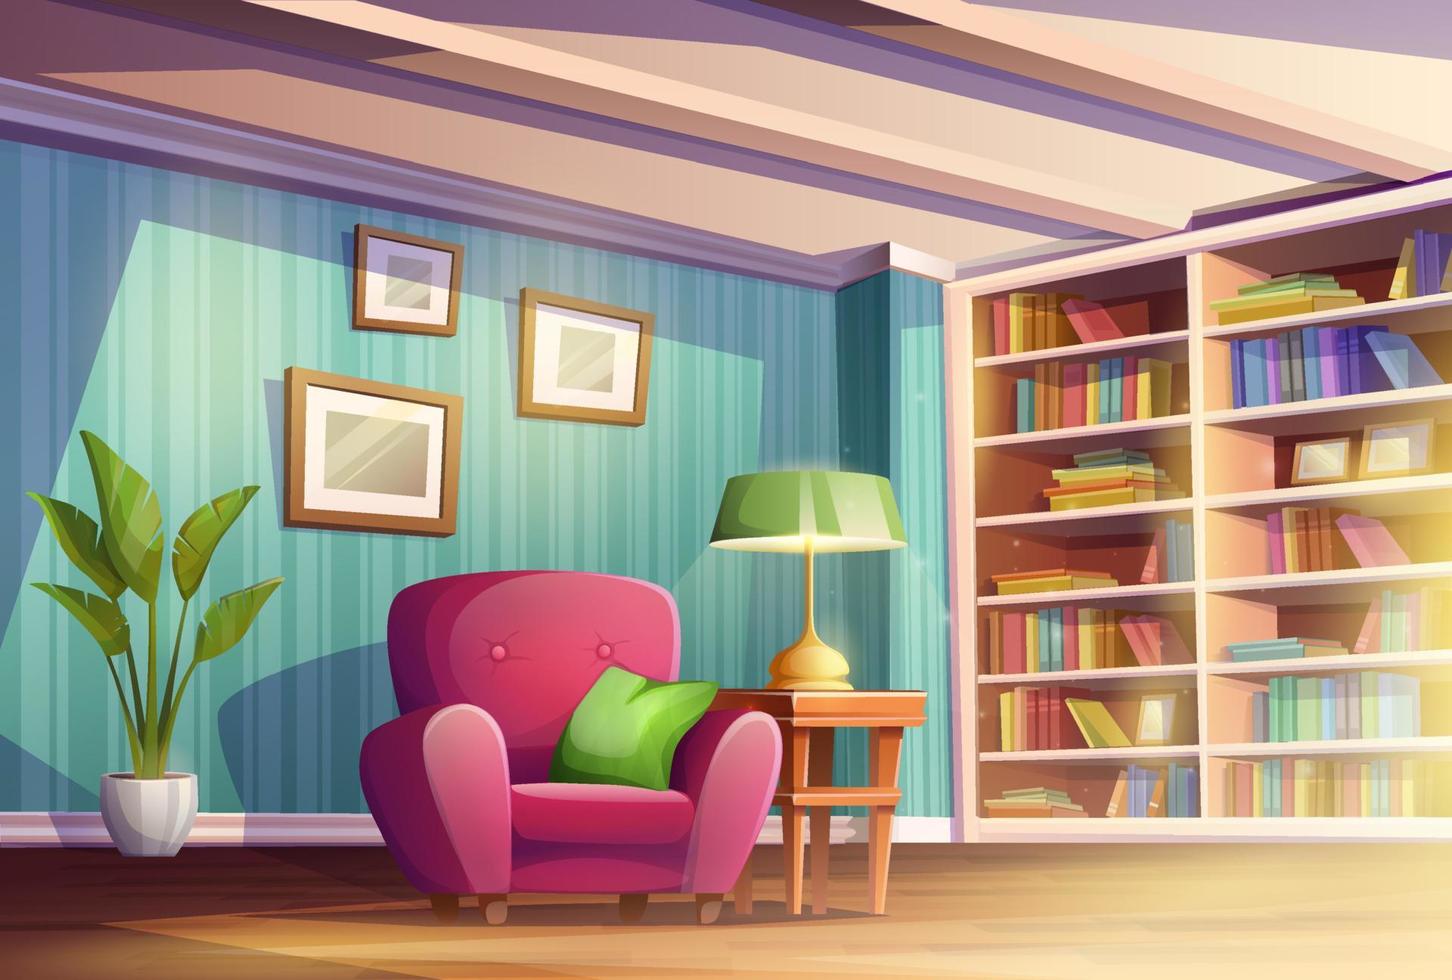 dessin animé vecteur illustration. confortable Accueil vivant pièce ou cabinet avec endroit pour en train de lire livres. bibliothèque avec livre étagères, chaise et lampe.